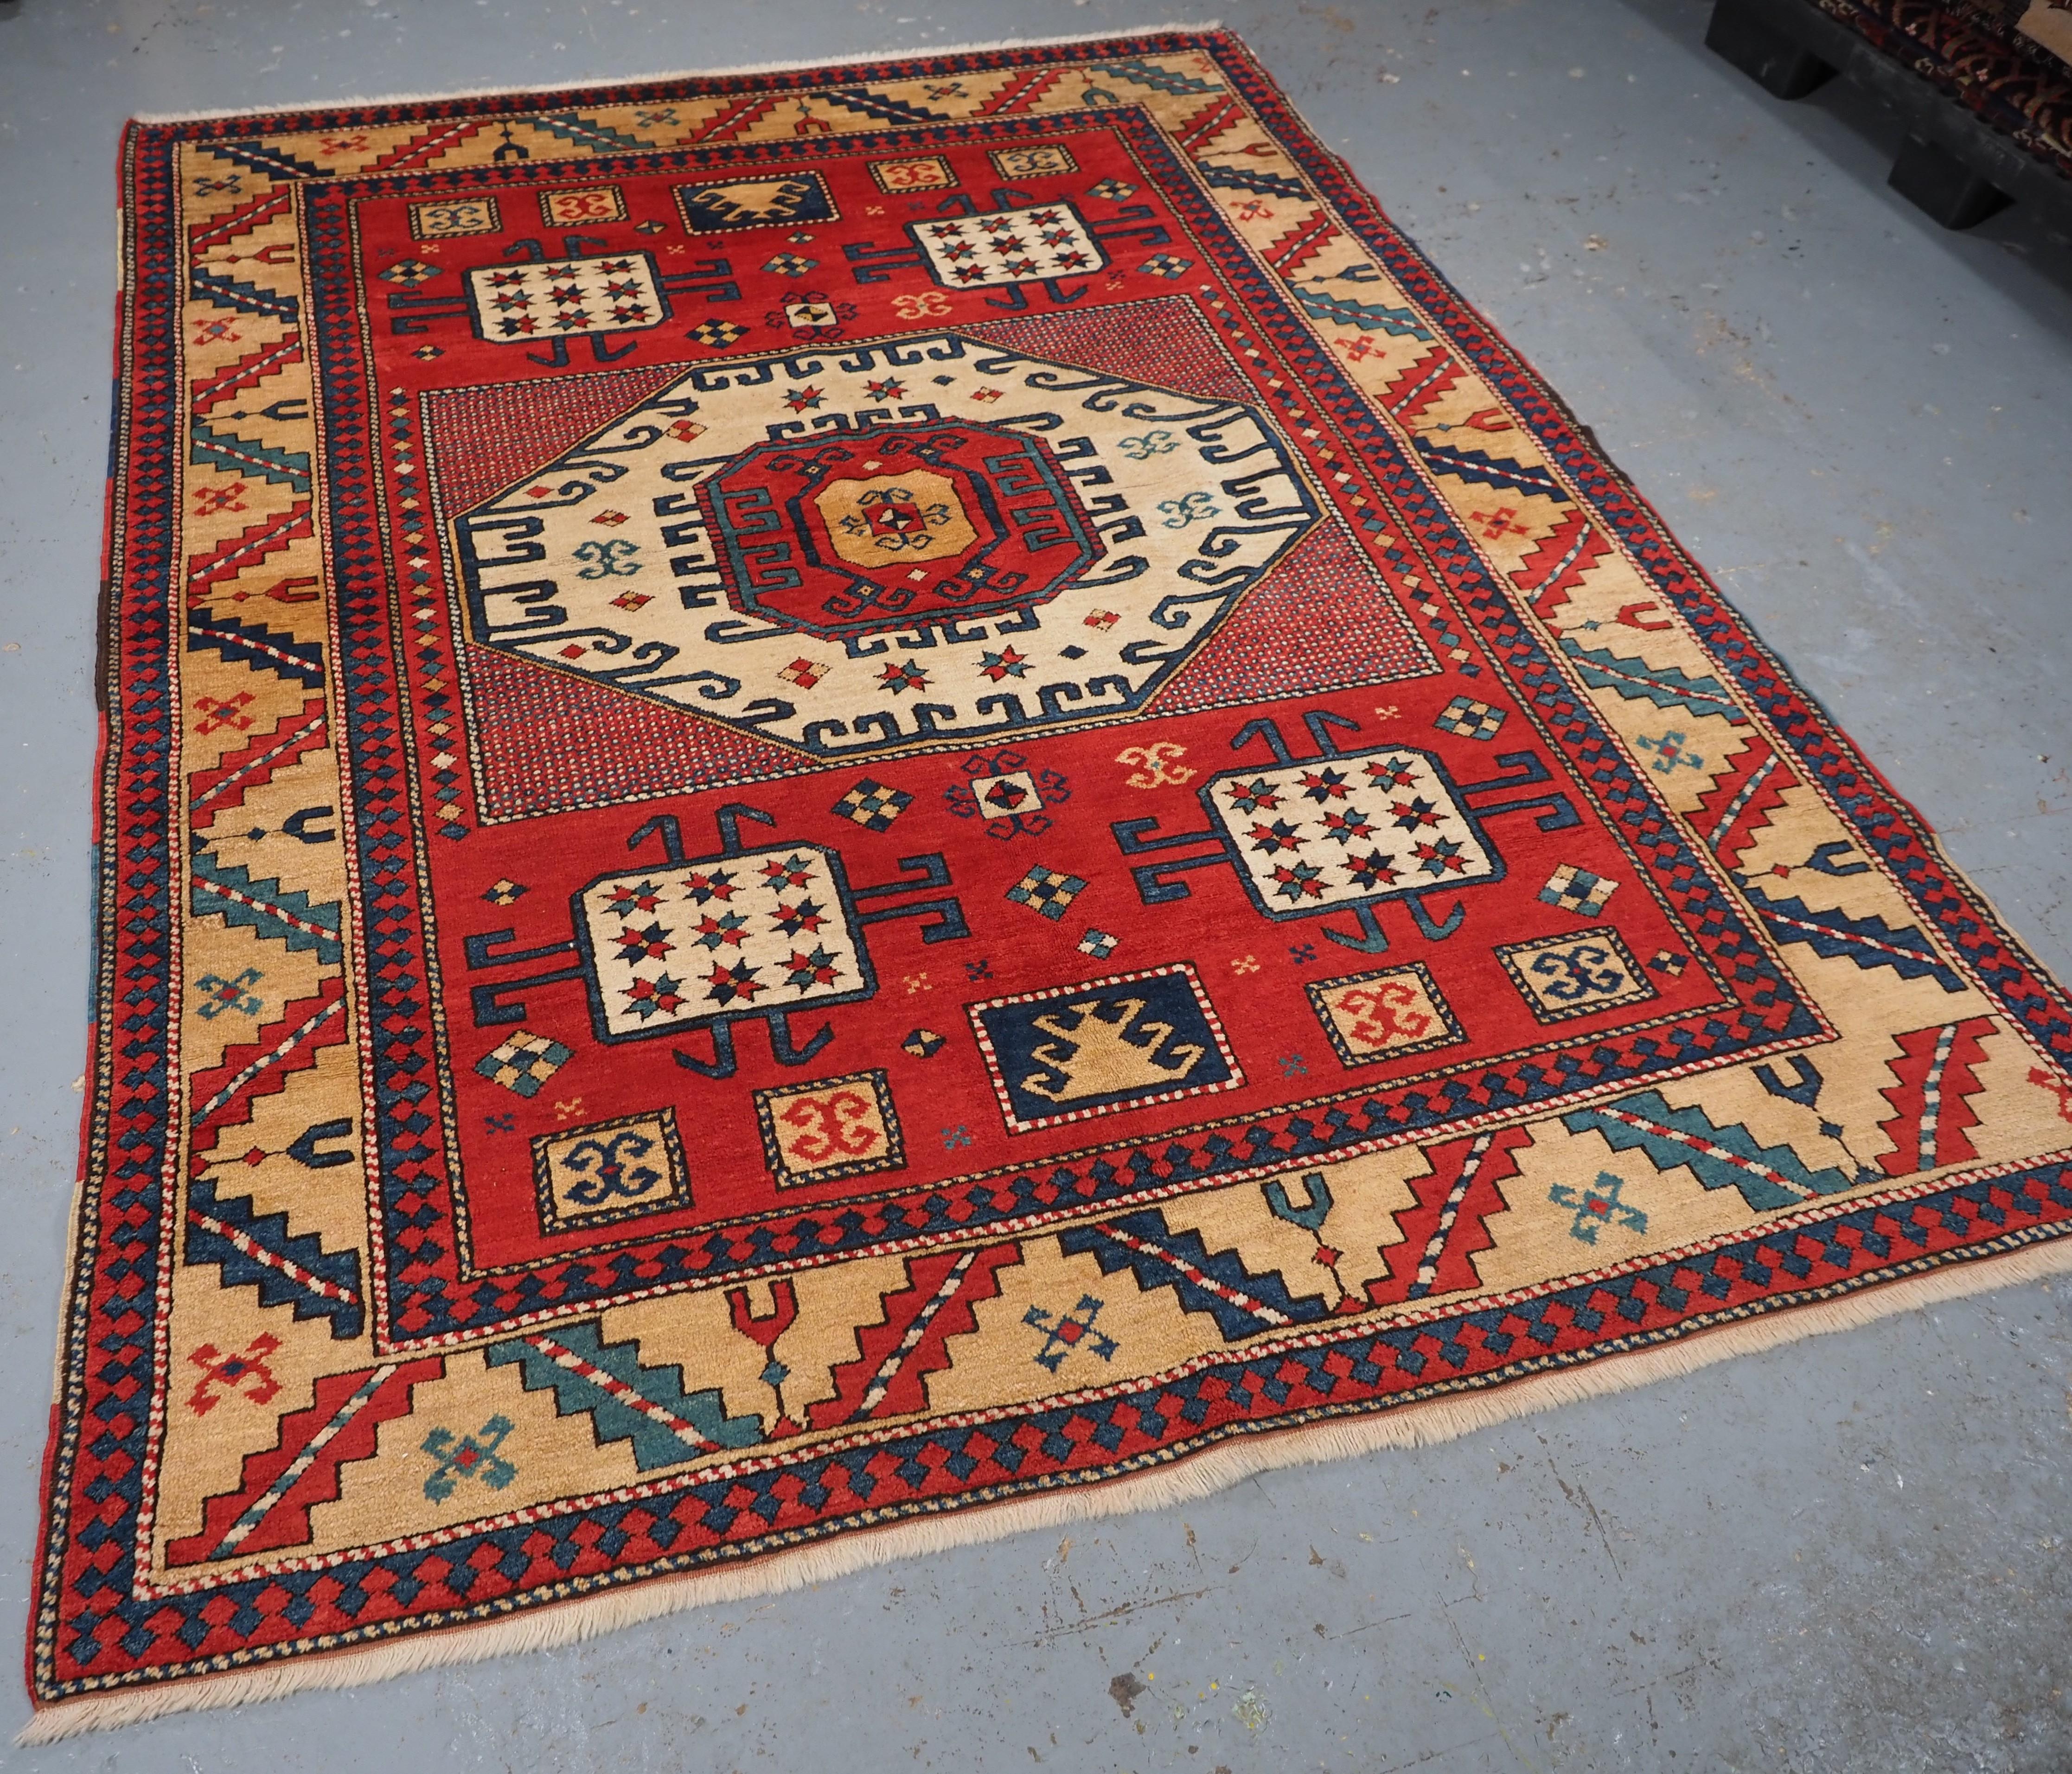 Größe: 7ft 5in x 5ft 9in (227 x 175cm).

Kaukasischer Teppich im Karatschow-Kazak-Stil mit klassischem Muster auf rotem Grund.

Circa 1980.

Ein hervorragendes Beispiel für einen Karachov-Kazak-Designteppich mit dem traditionellen großen achteckigen